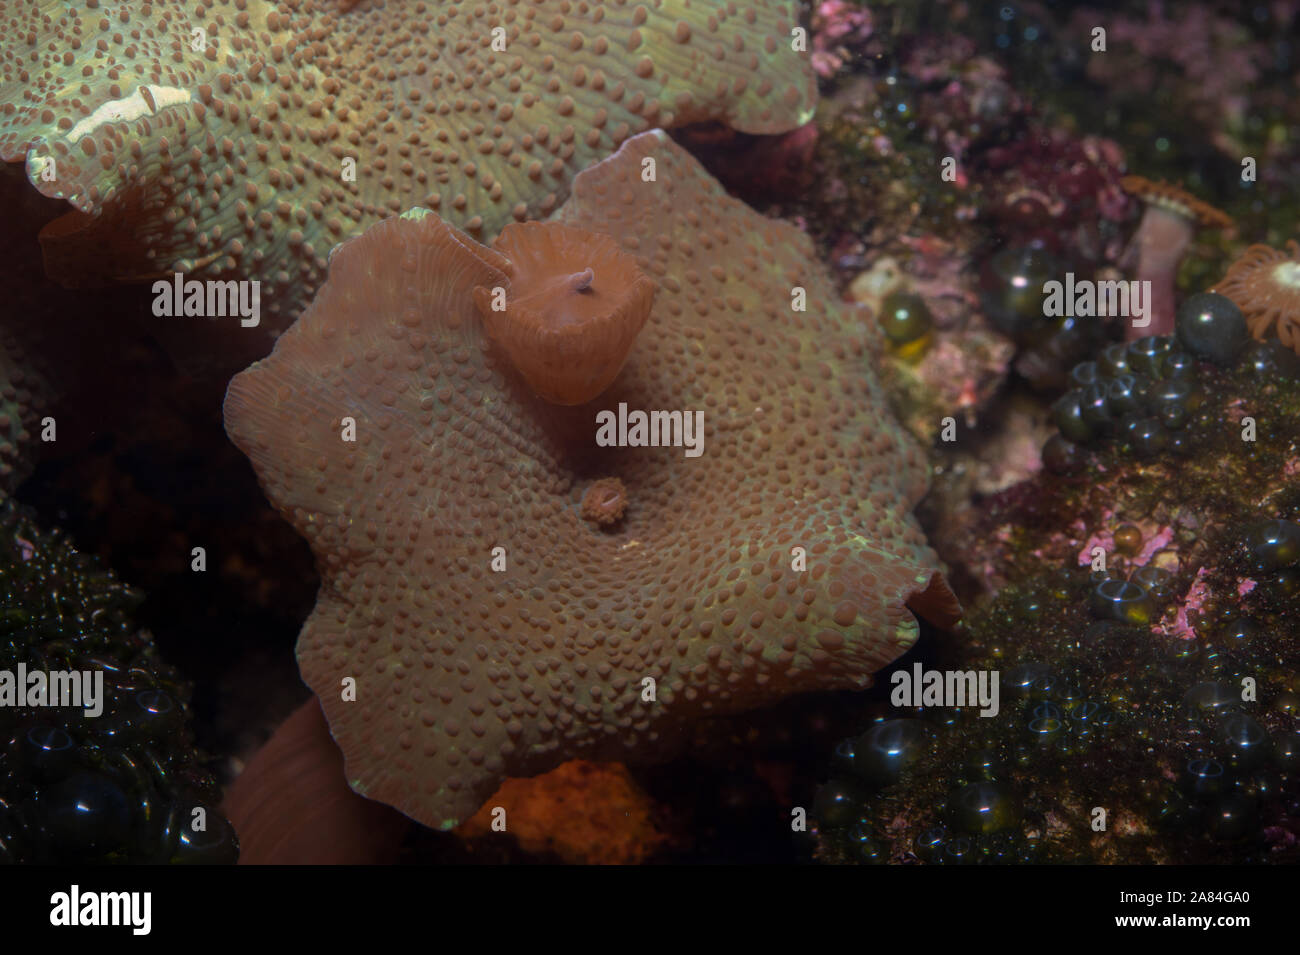 Reproduktion durch Knospung von Mushroom Coral, Discosoma sp., Discosomatidae, Bali, Indonesien, Indo-Pazifischen Ozean Stockfoto